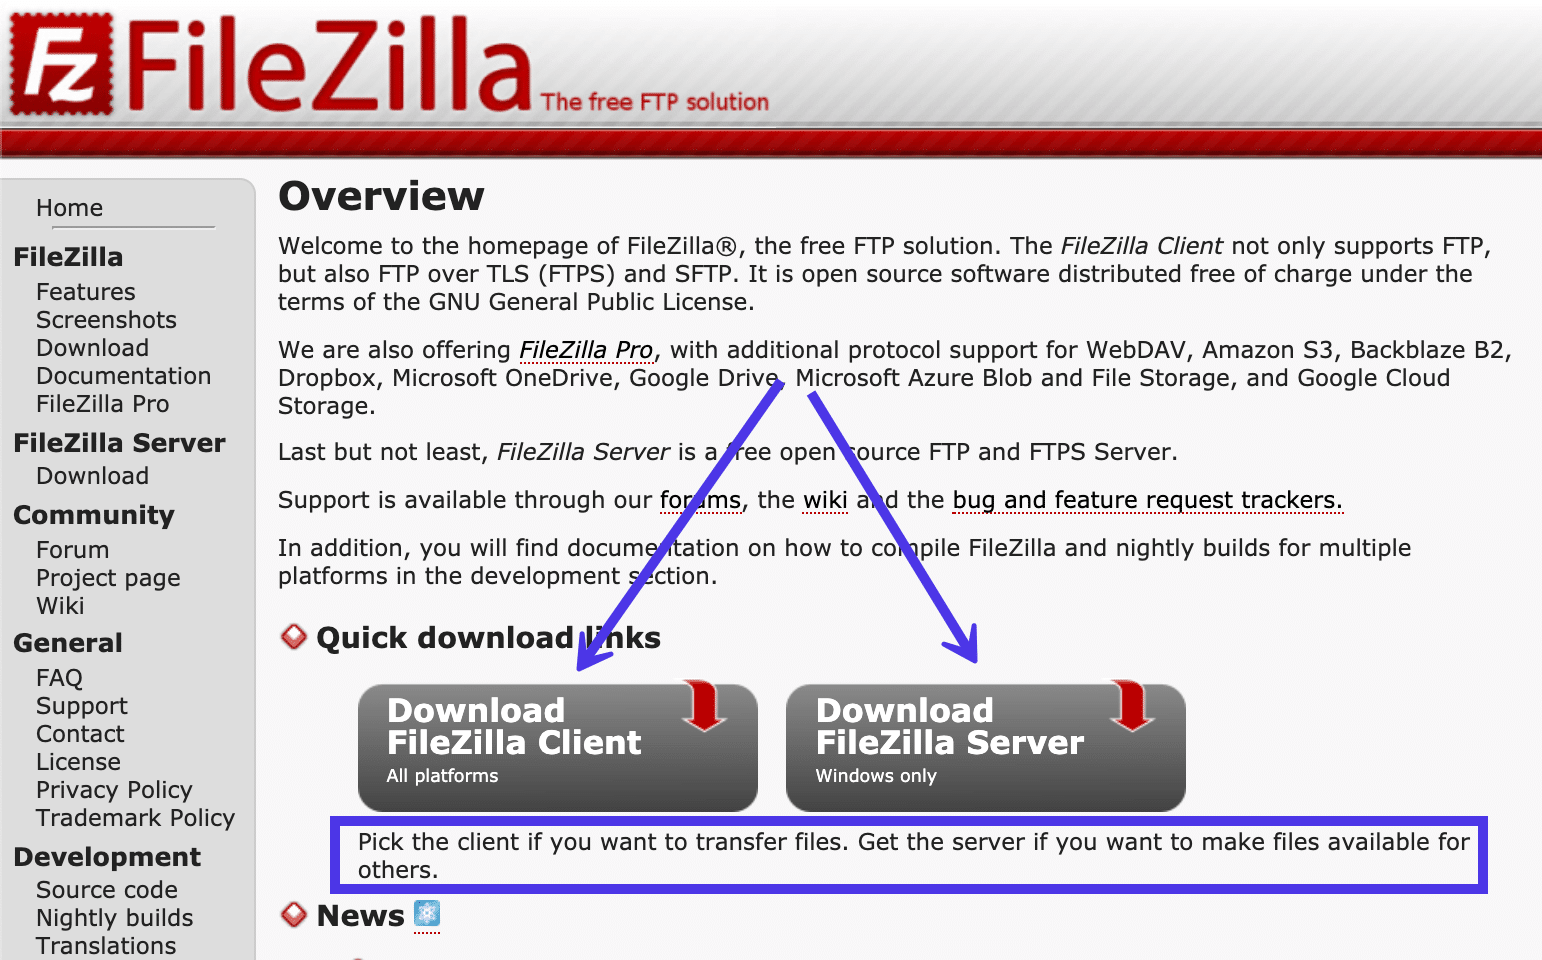 Le site web de FileZilla proposait deux options de téléchargement pour le client FileZilla et le serveur FileZilla.